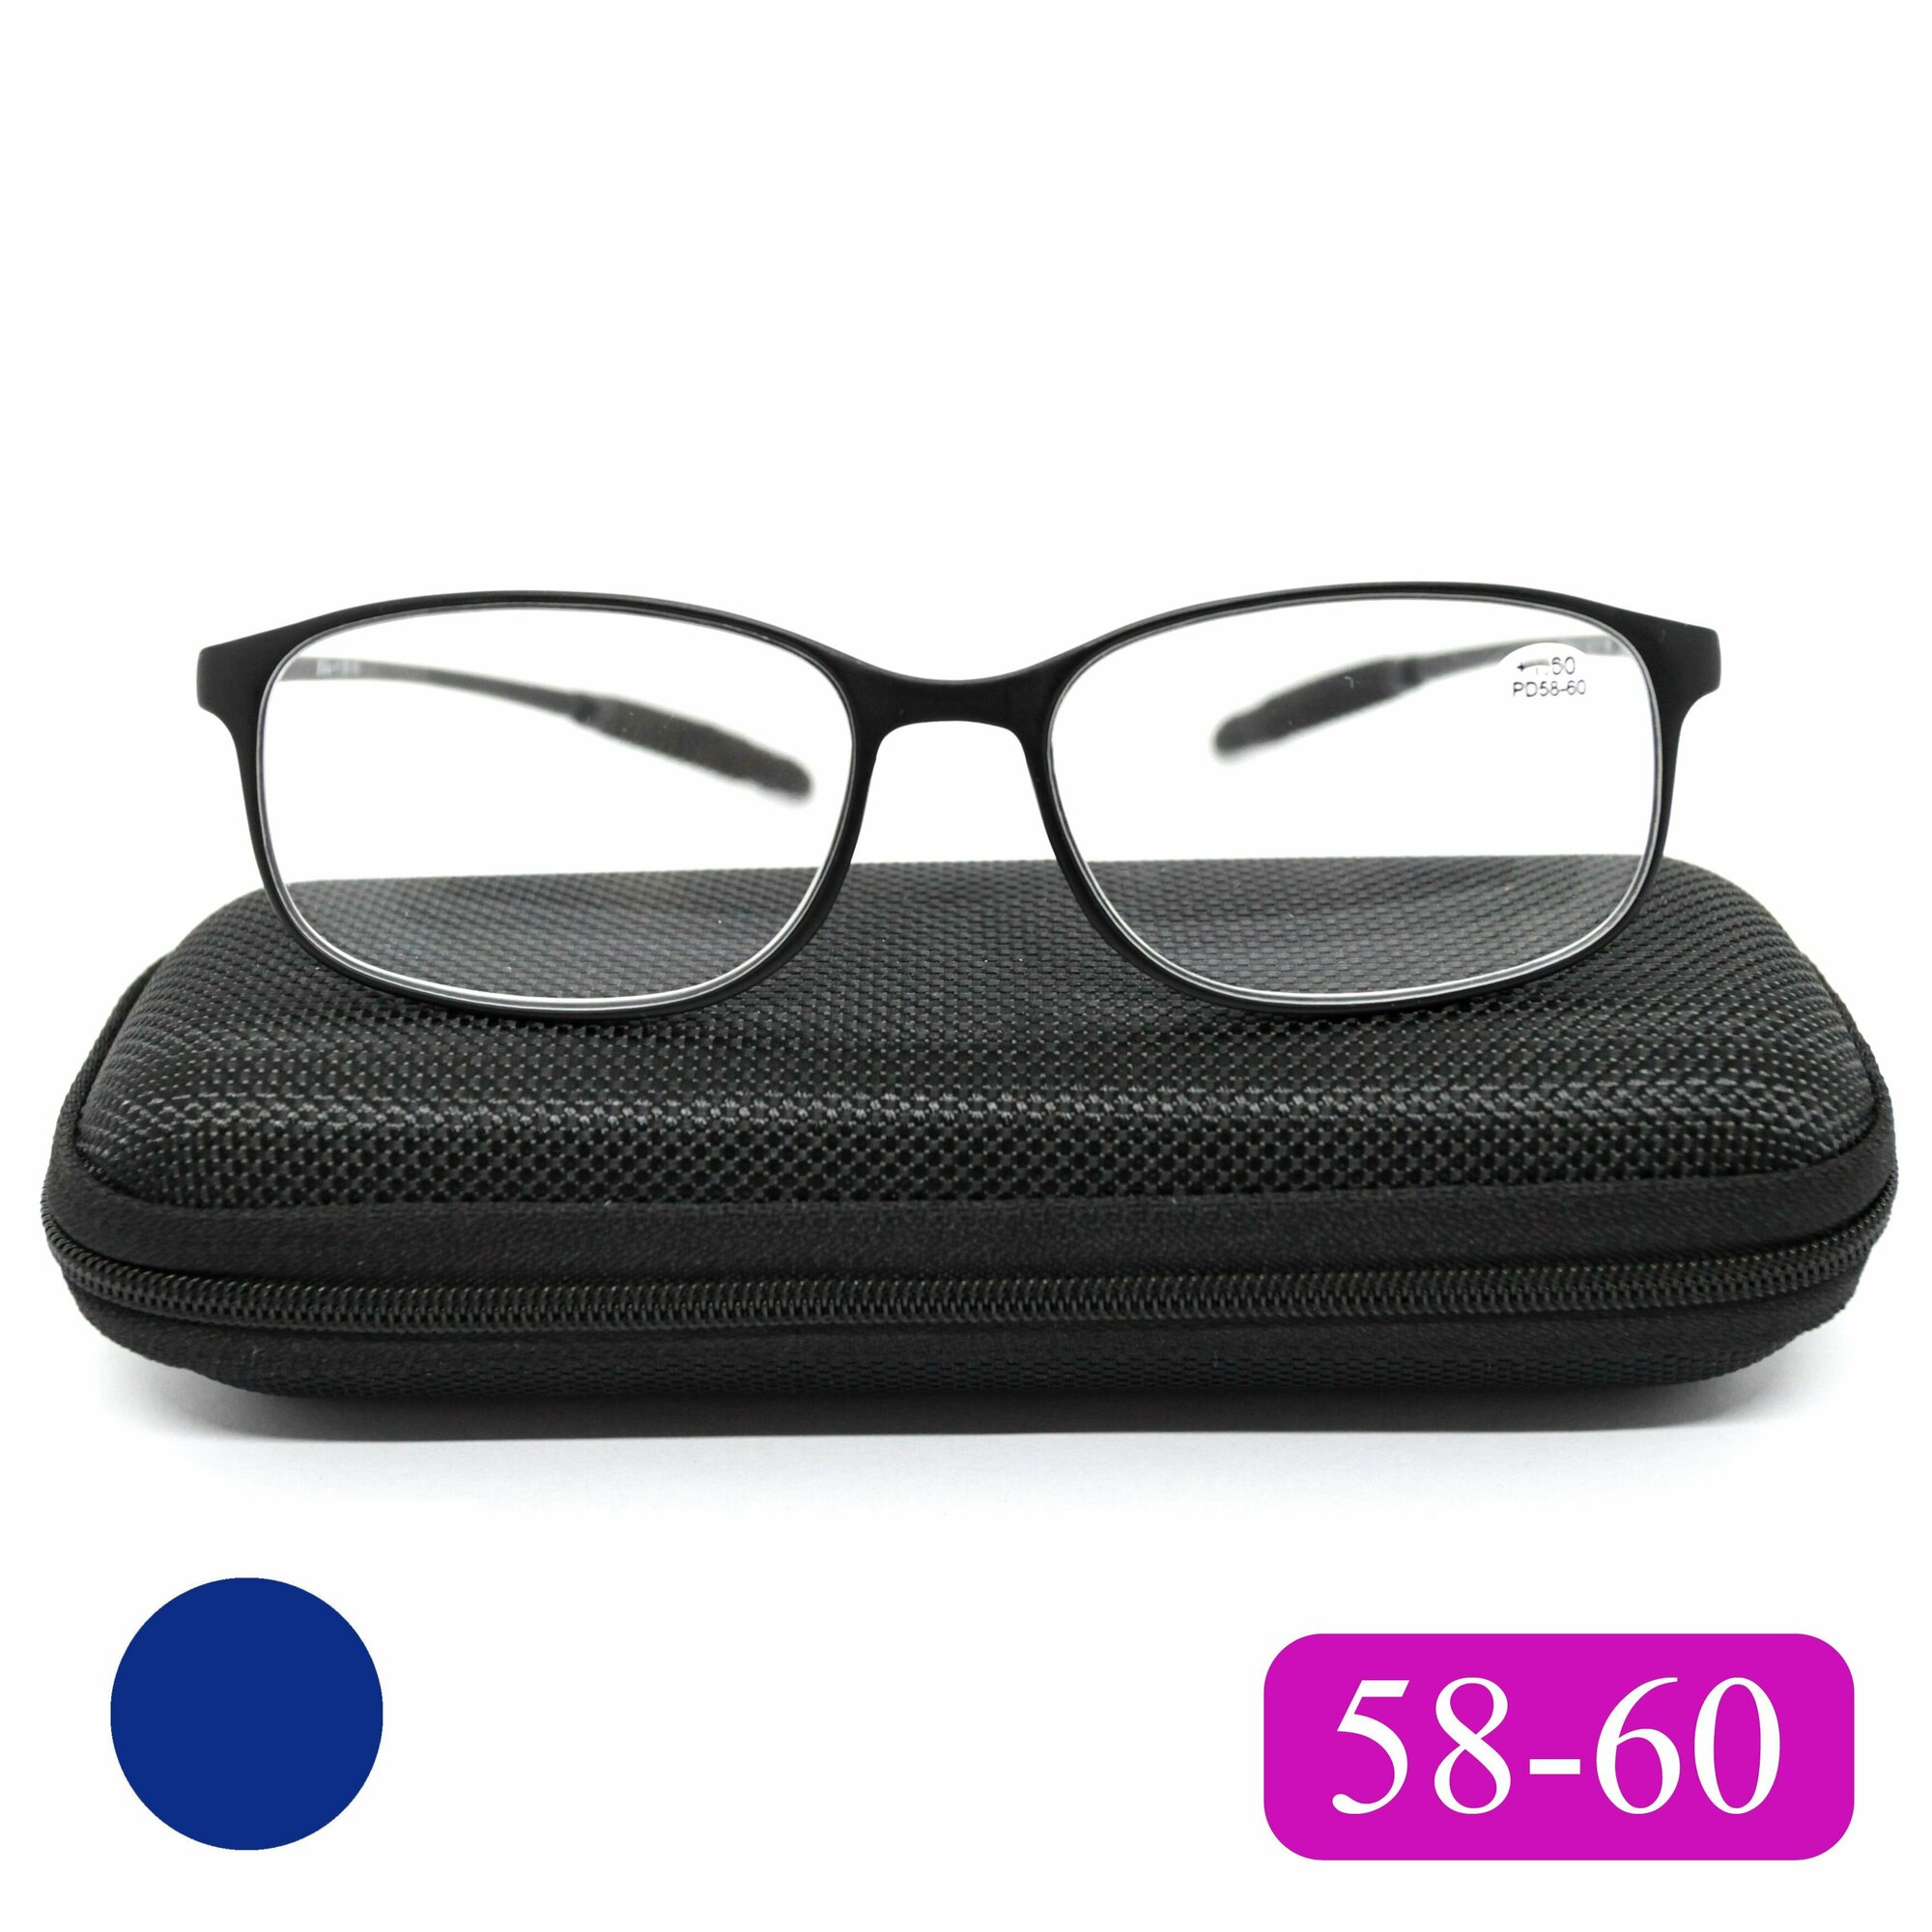 Готовые карбоновые очки для чтения РЦ 58-60 (+2.25) с футляром, цвет сине-фиолетовый